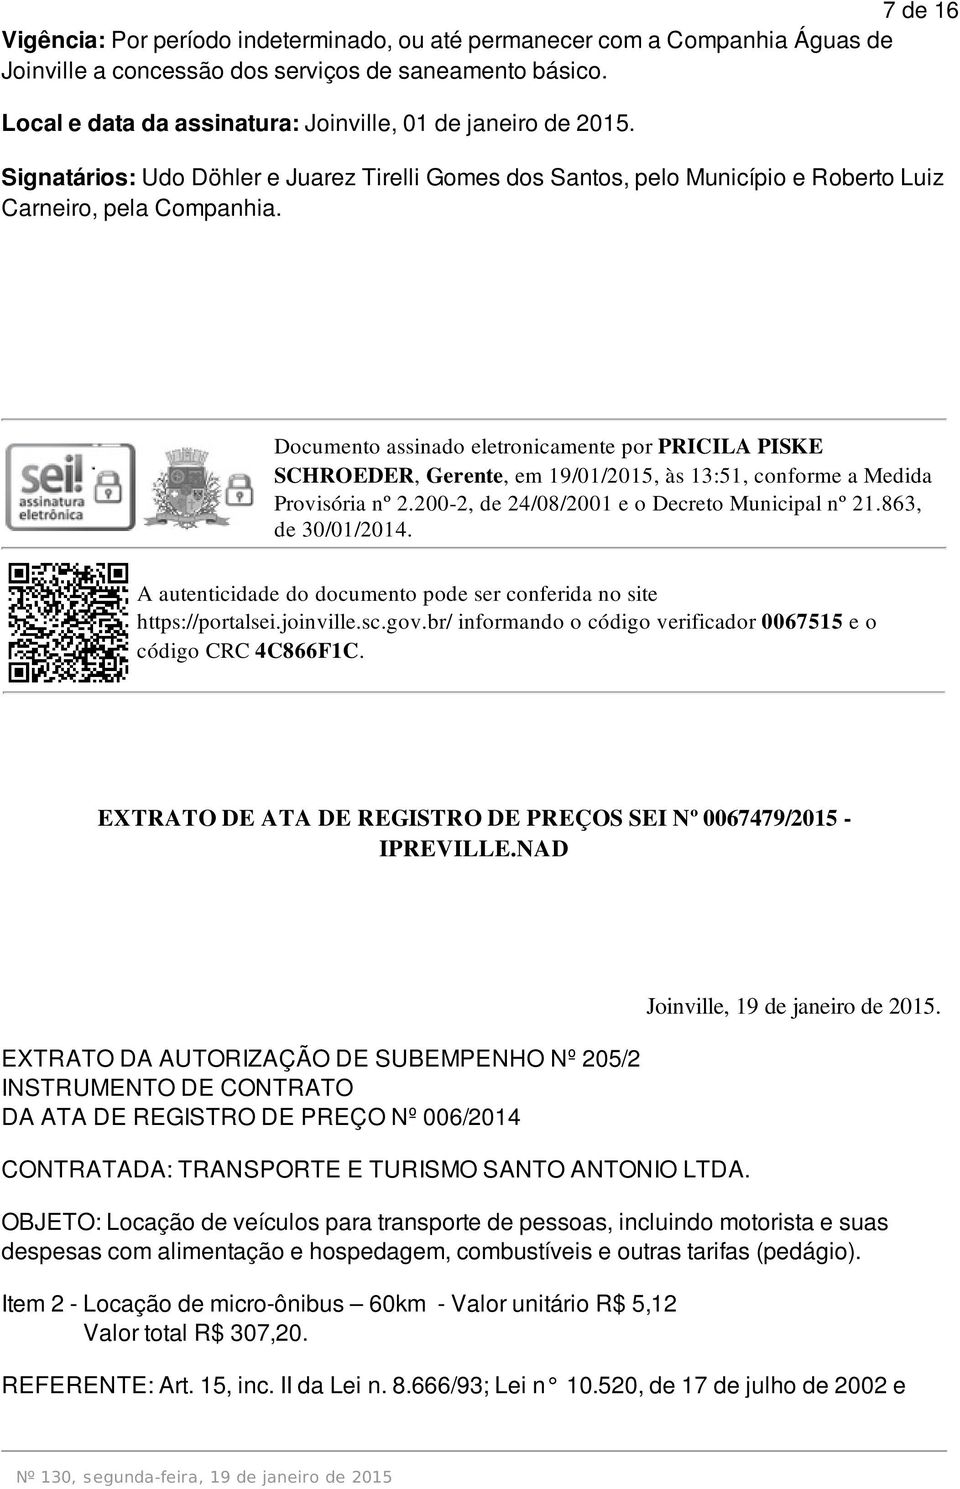 Documento assinado eletronicamente por PRICILA PISKE SCHROEDER, Gerente, em 19/01/2015, às 13:51, conforme a Medida Provisória nº 2.200-2, de 24/08/2001 e o Decreto Municipal nº 21.863, de 30/01/2014.